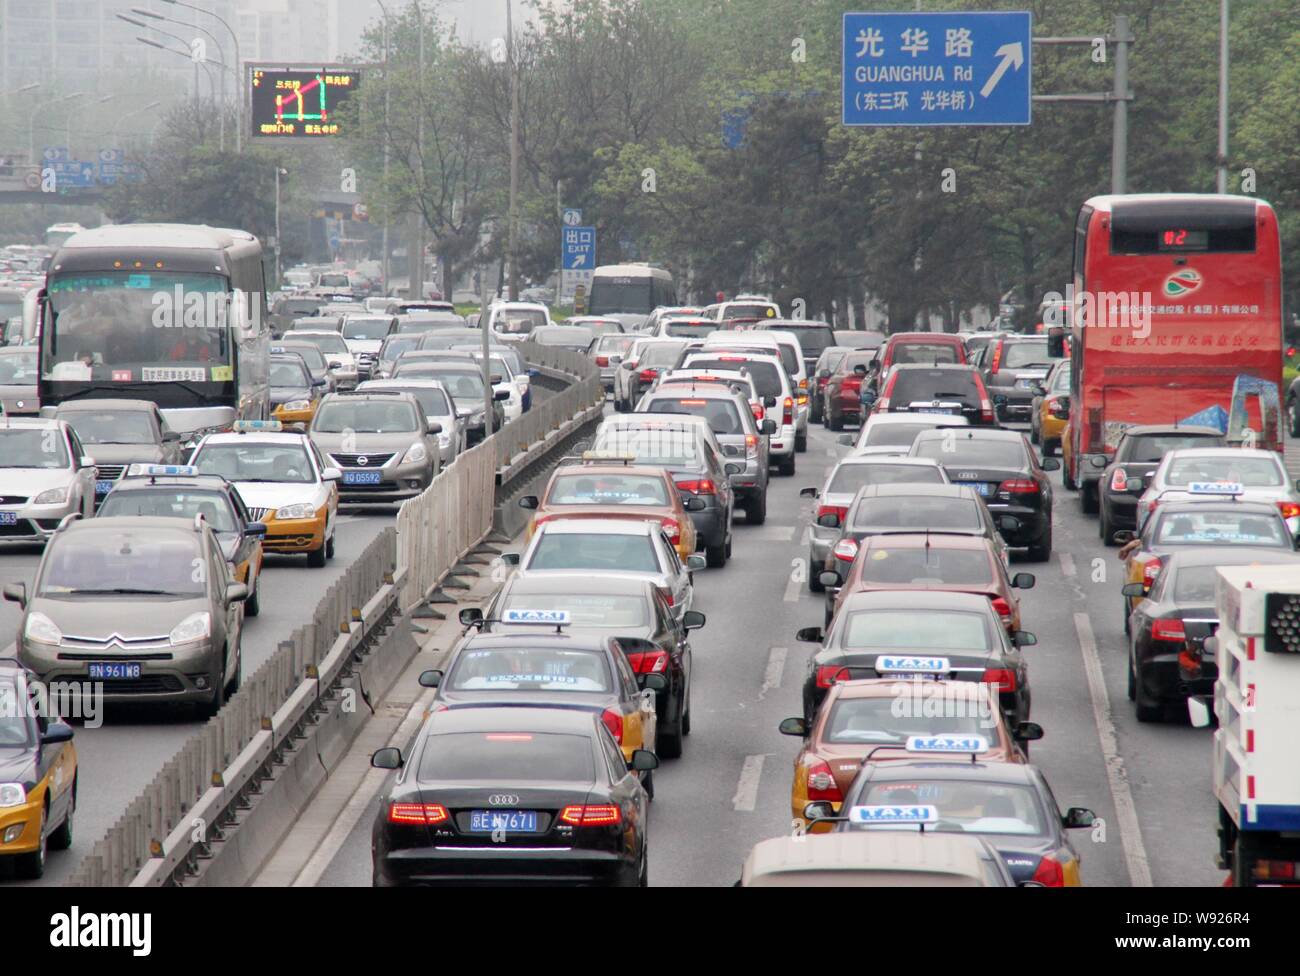 ---- Massen von Autos und Bussen bewegen Sie langsam im Stau auf einer Straße in Peking, China, 28. April 2013. Auf den Spuren von größeren Metropoli Stockfoto